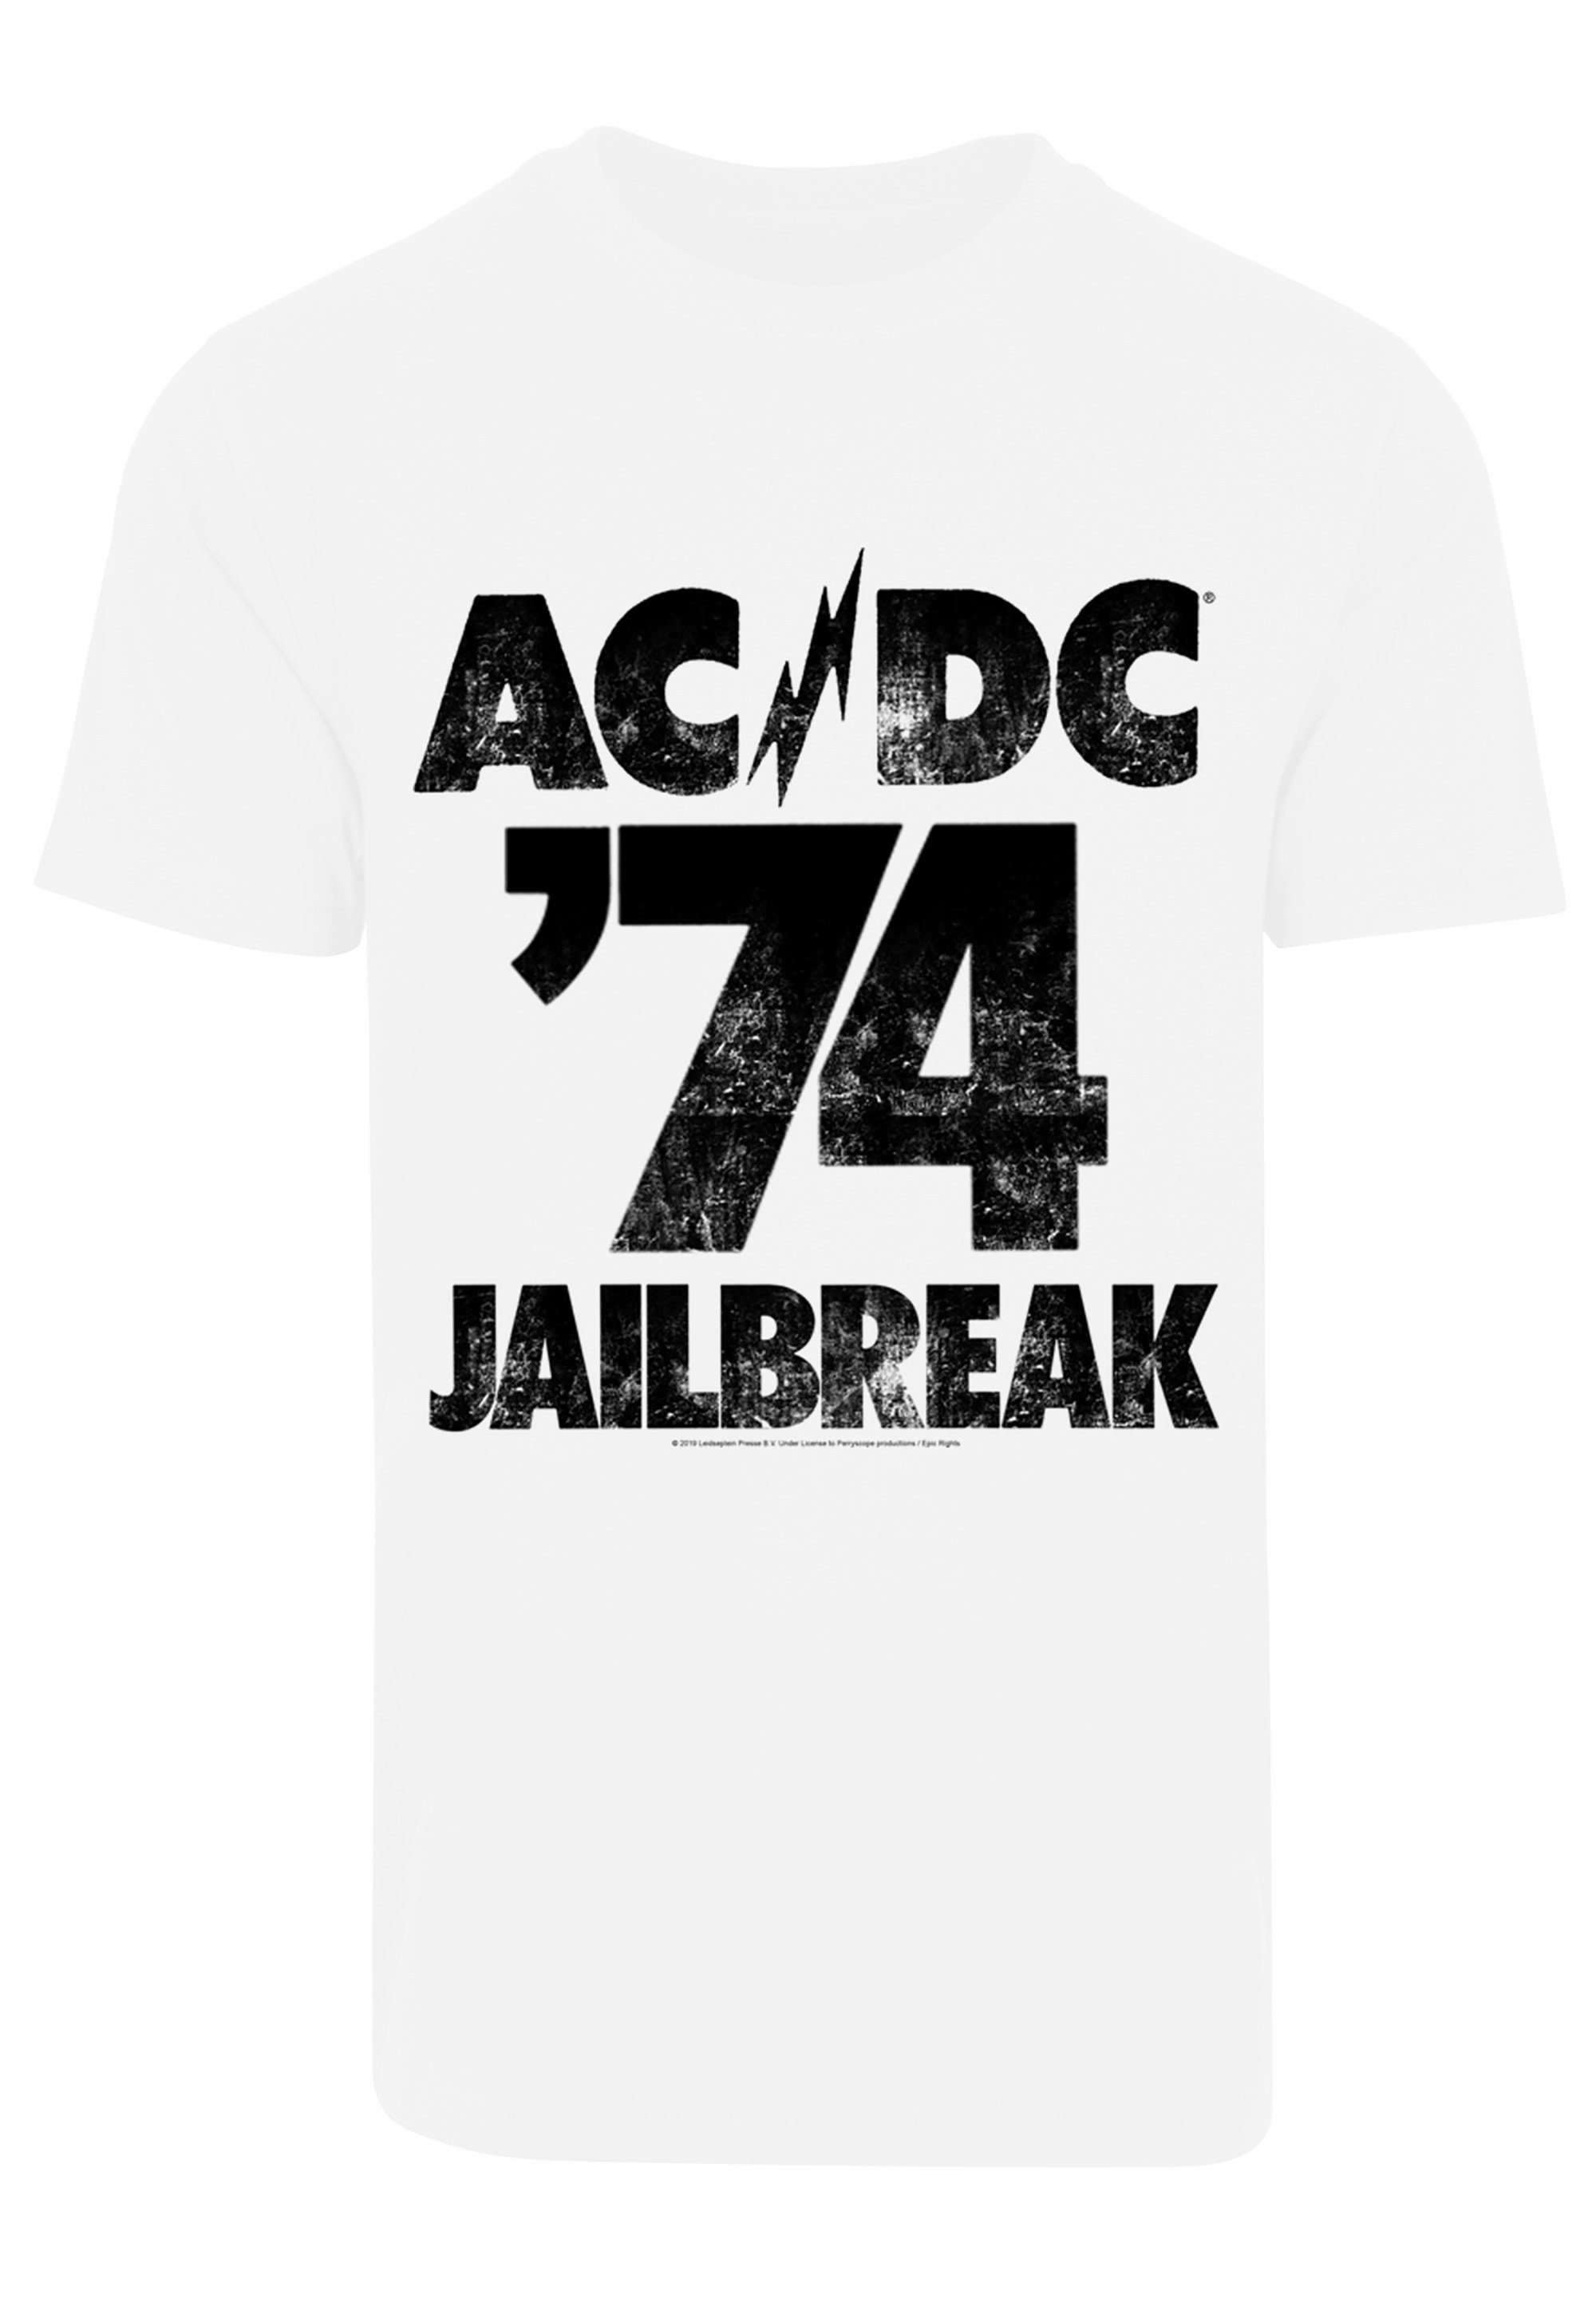 Print T-Shirt Kinder & ACDC F4NT4STIC Herren Jailbreak für 74